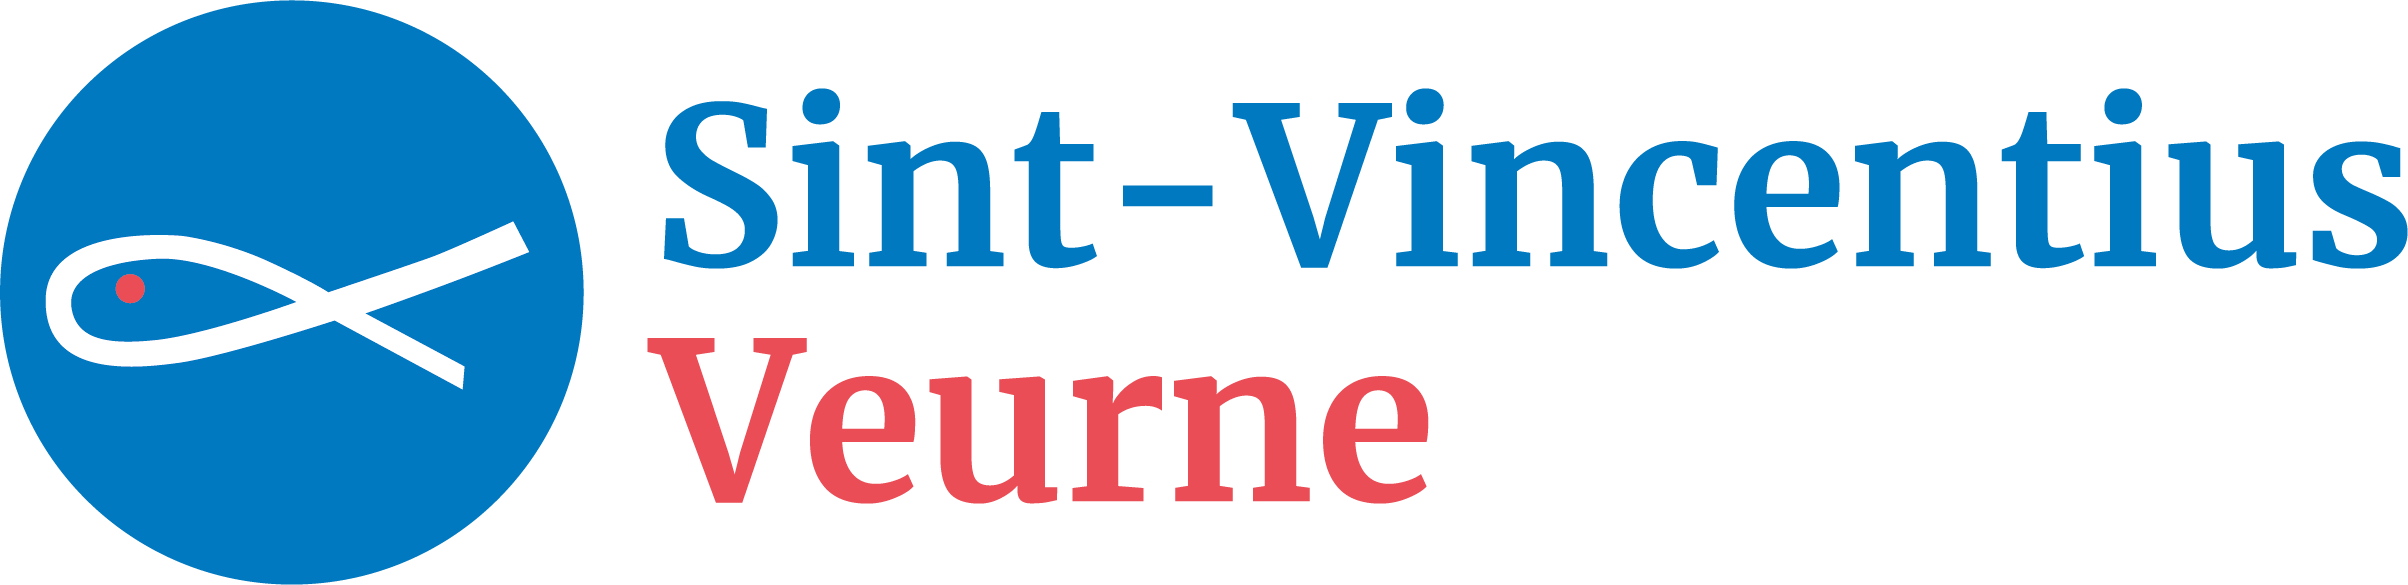 Sint-Vincentius Veurne